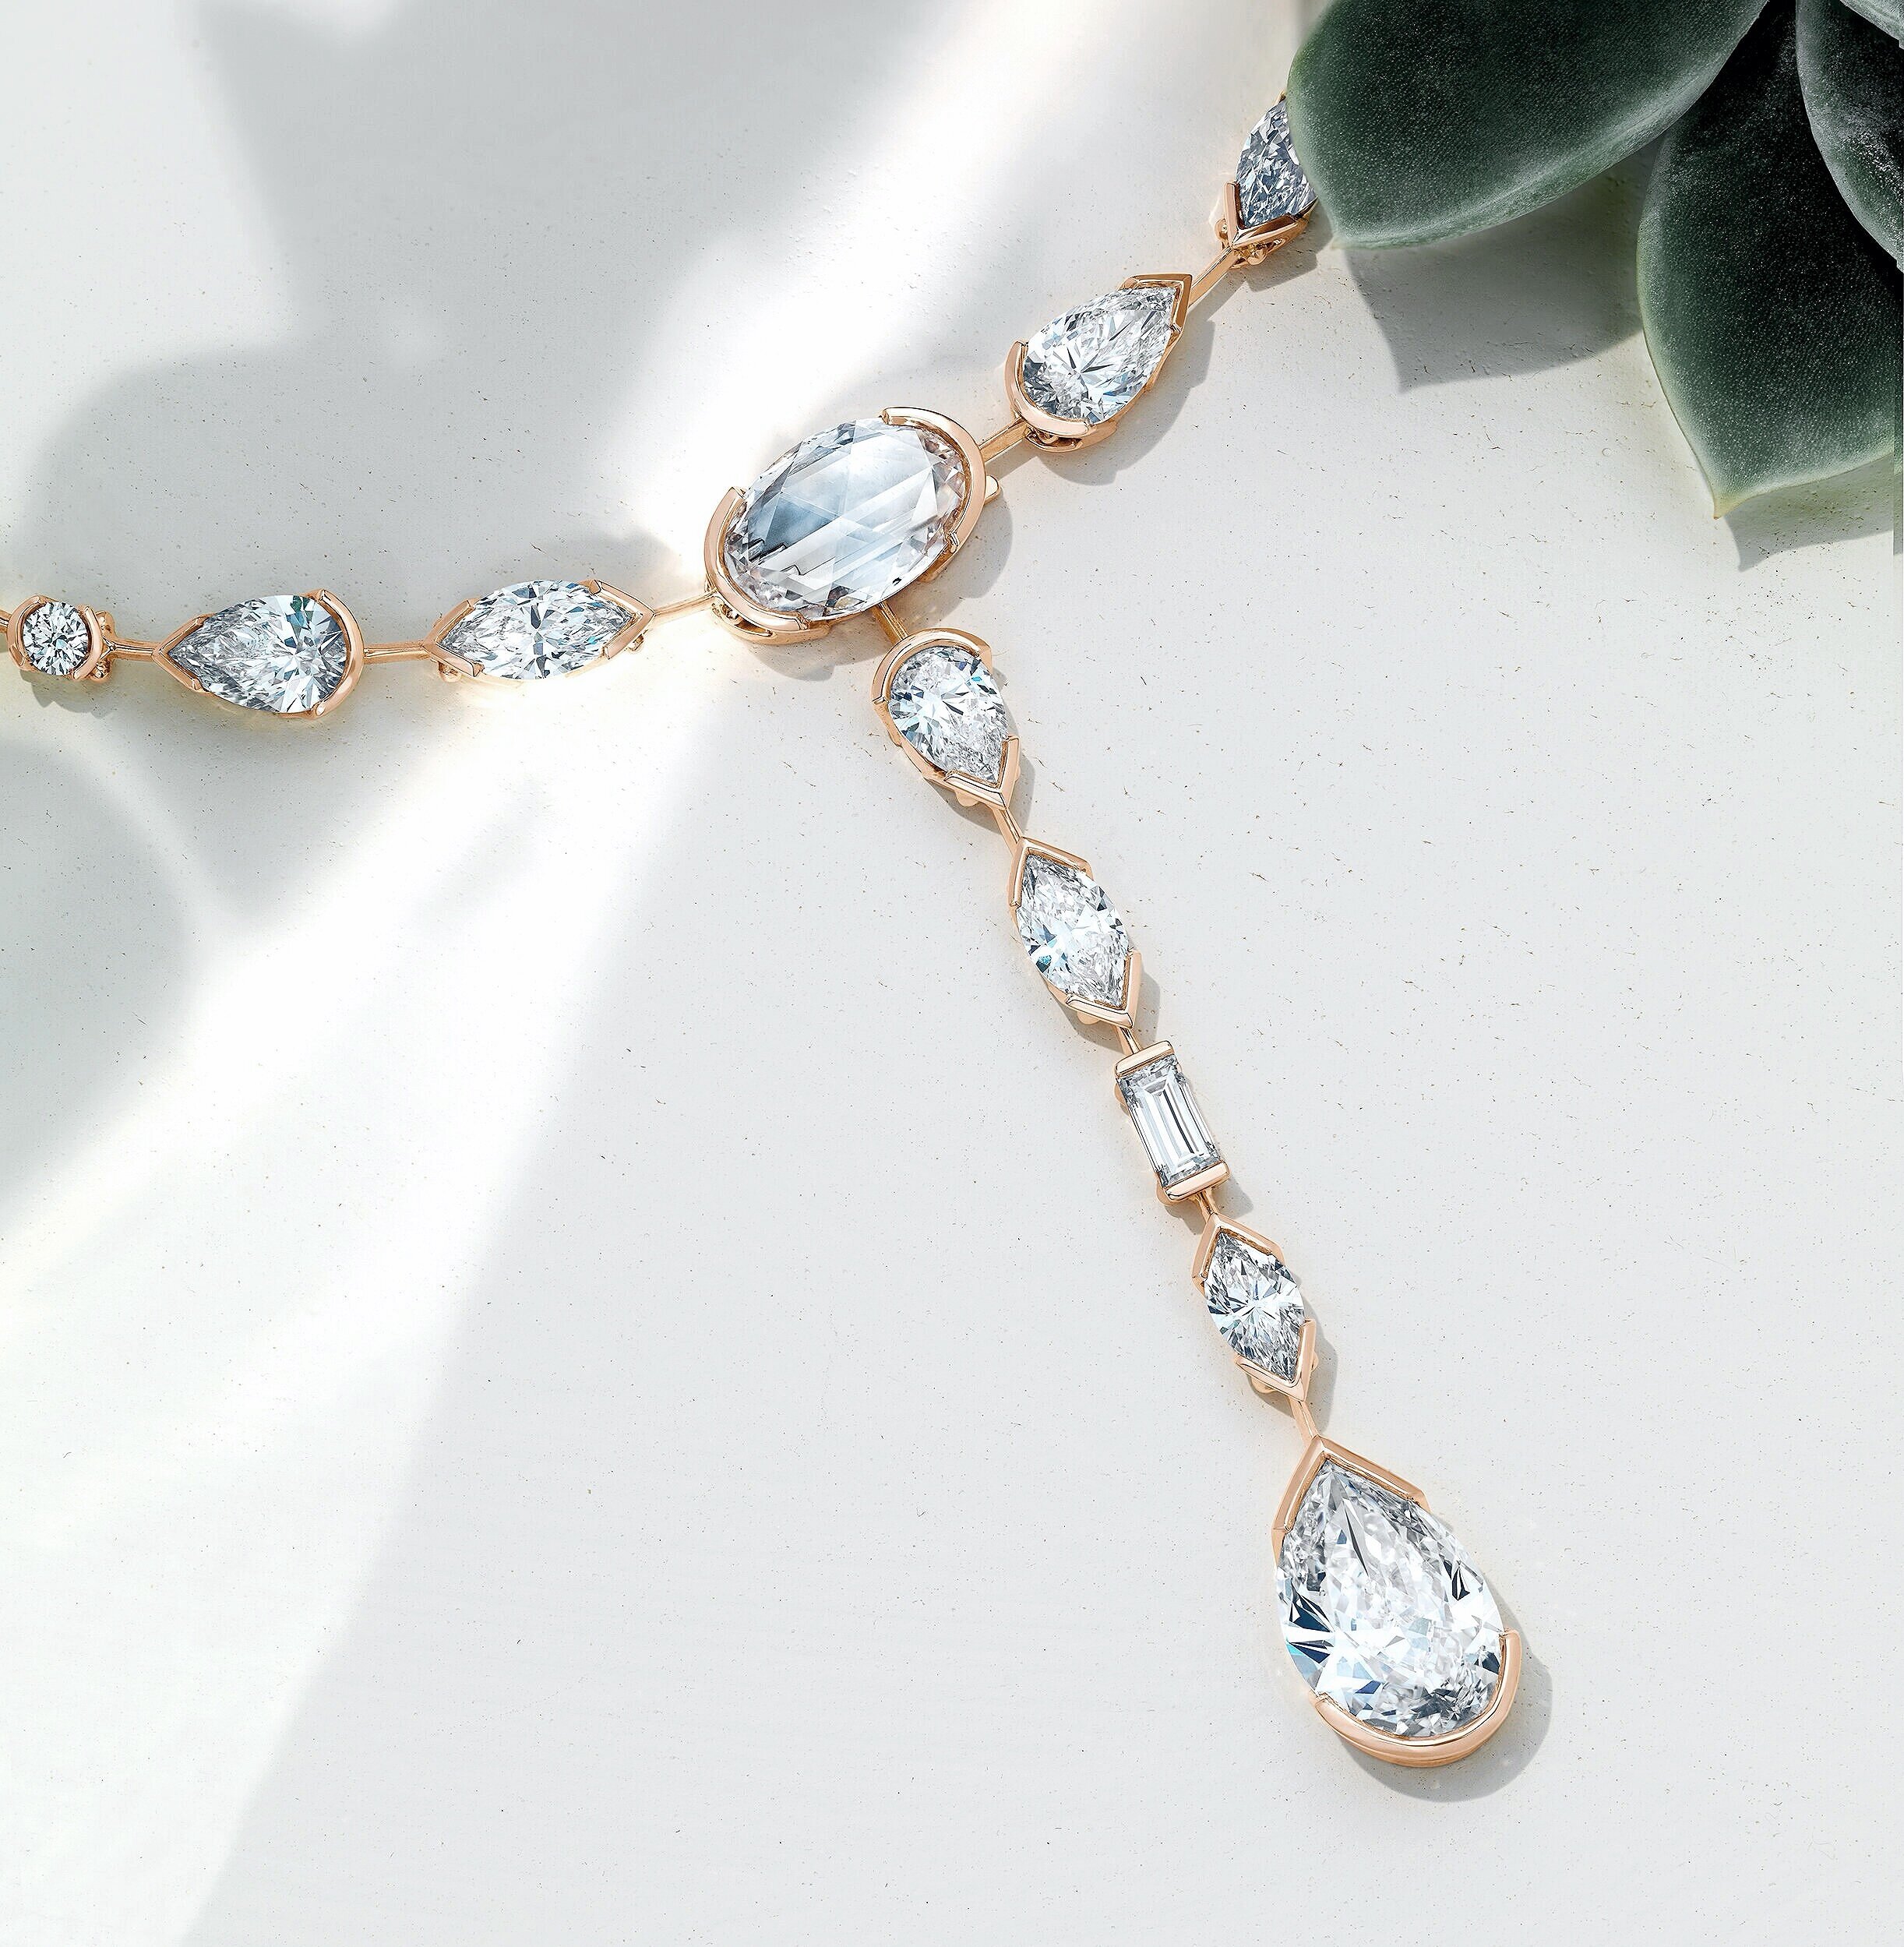  Diamond necklace shot for De Beers 